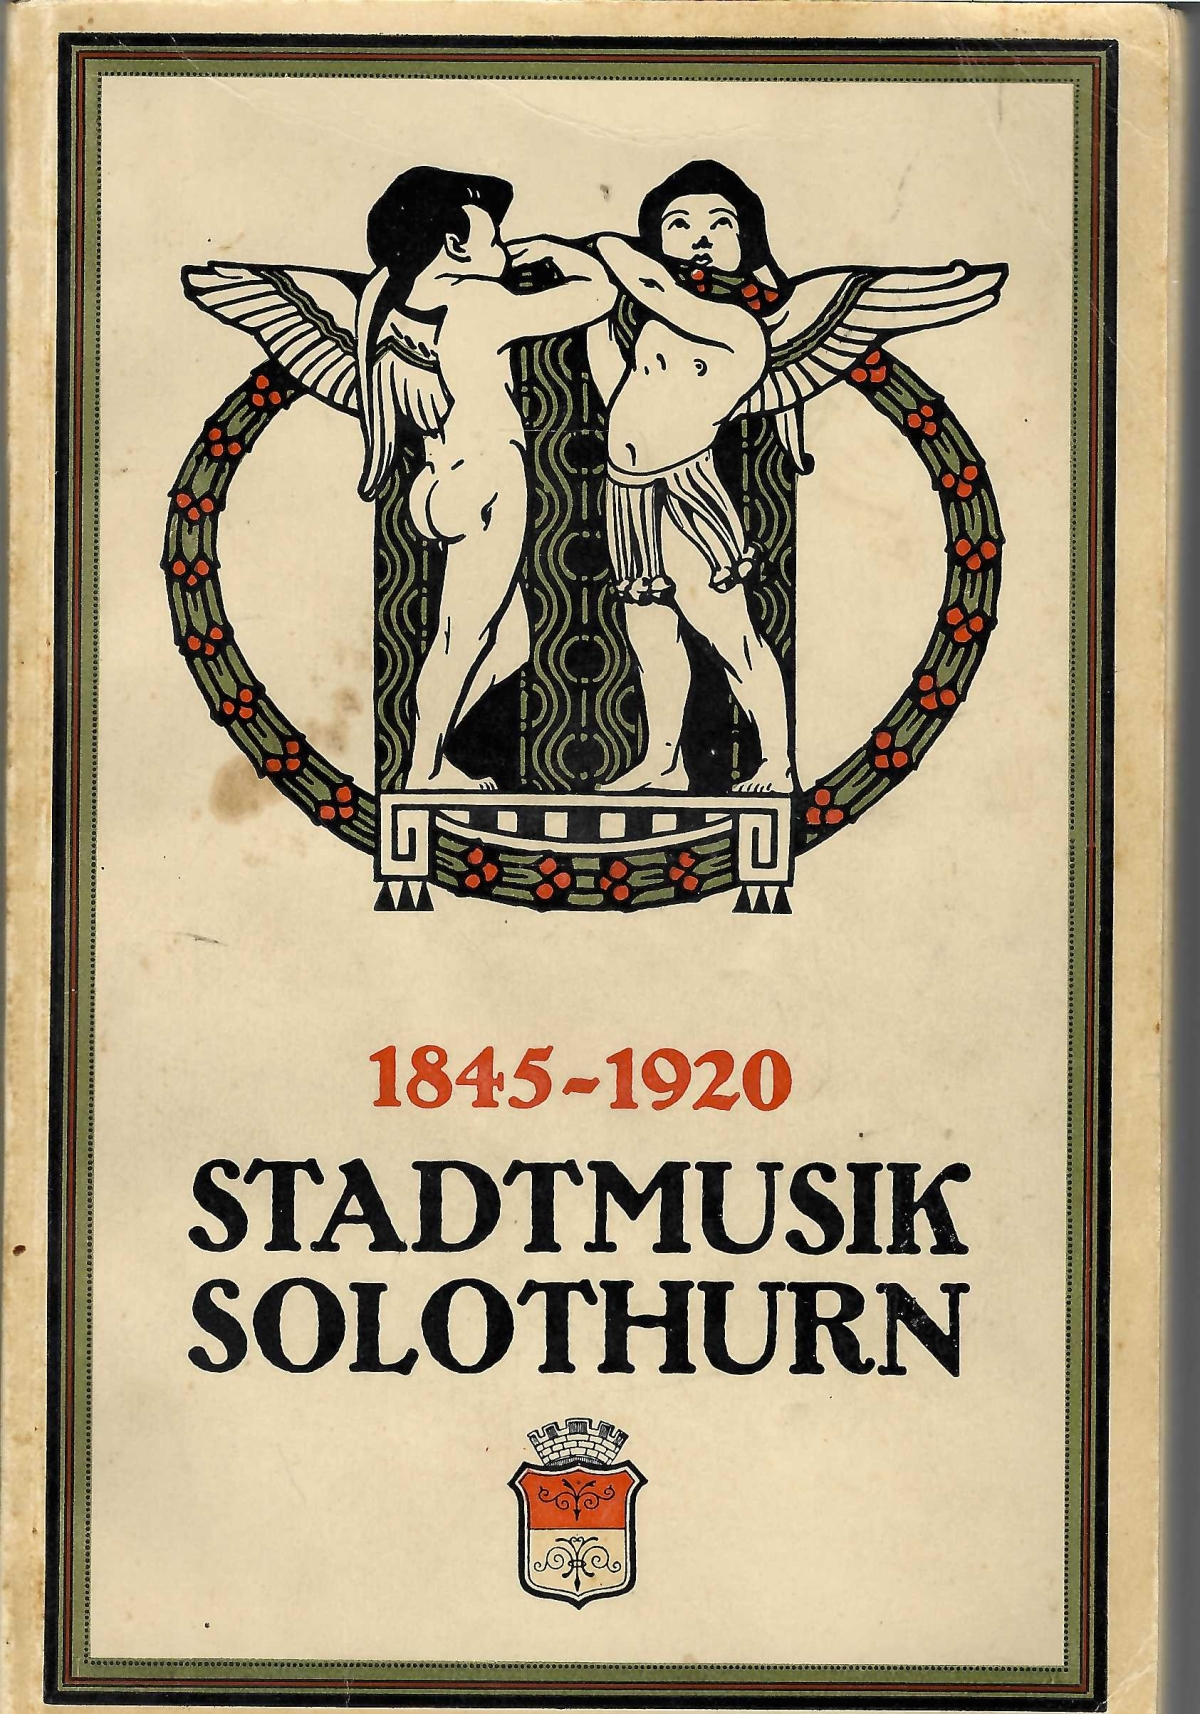 <p>Festschrift zur Feier des 75 jährigen Bestehens der Stadtmusik Solothurn 1845-1920</p>